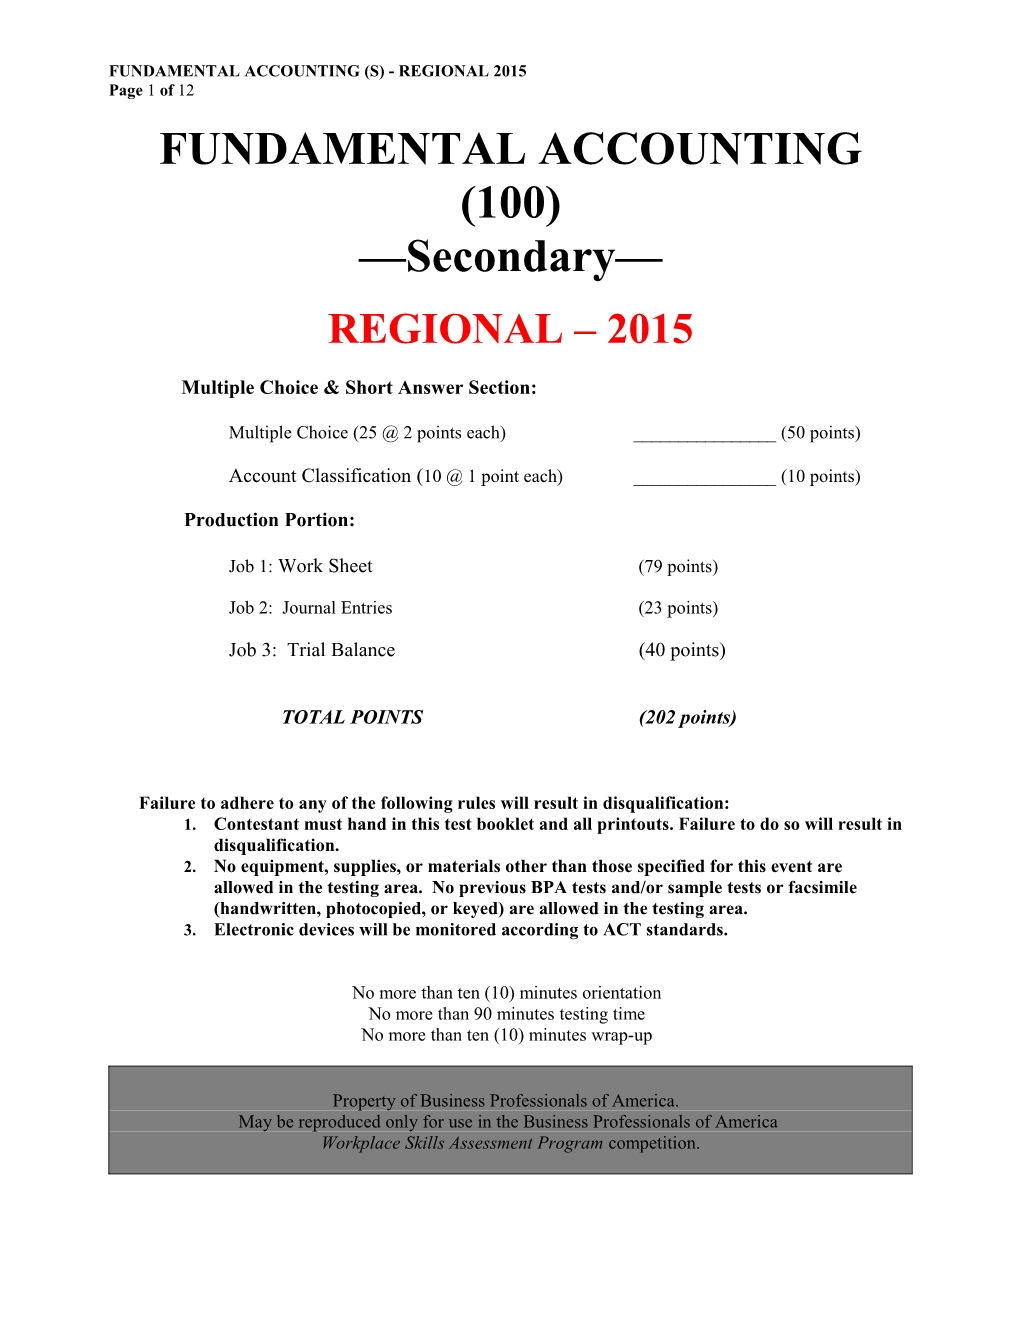 Fundamental Accounting(S) - Regional 2015